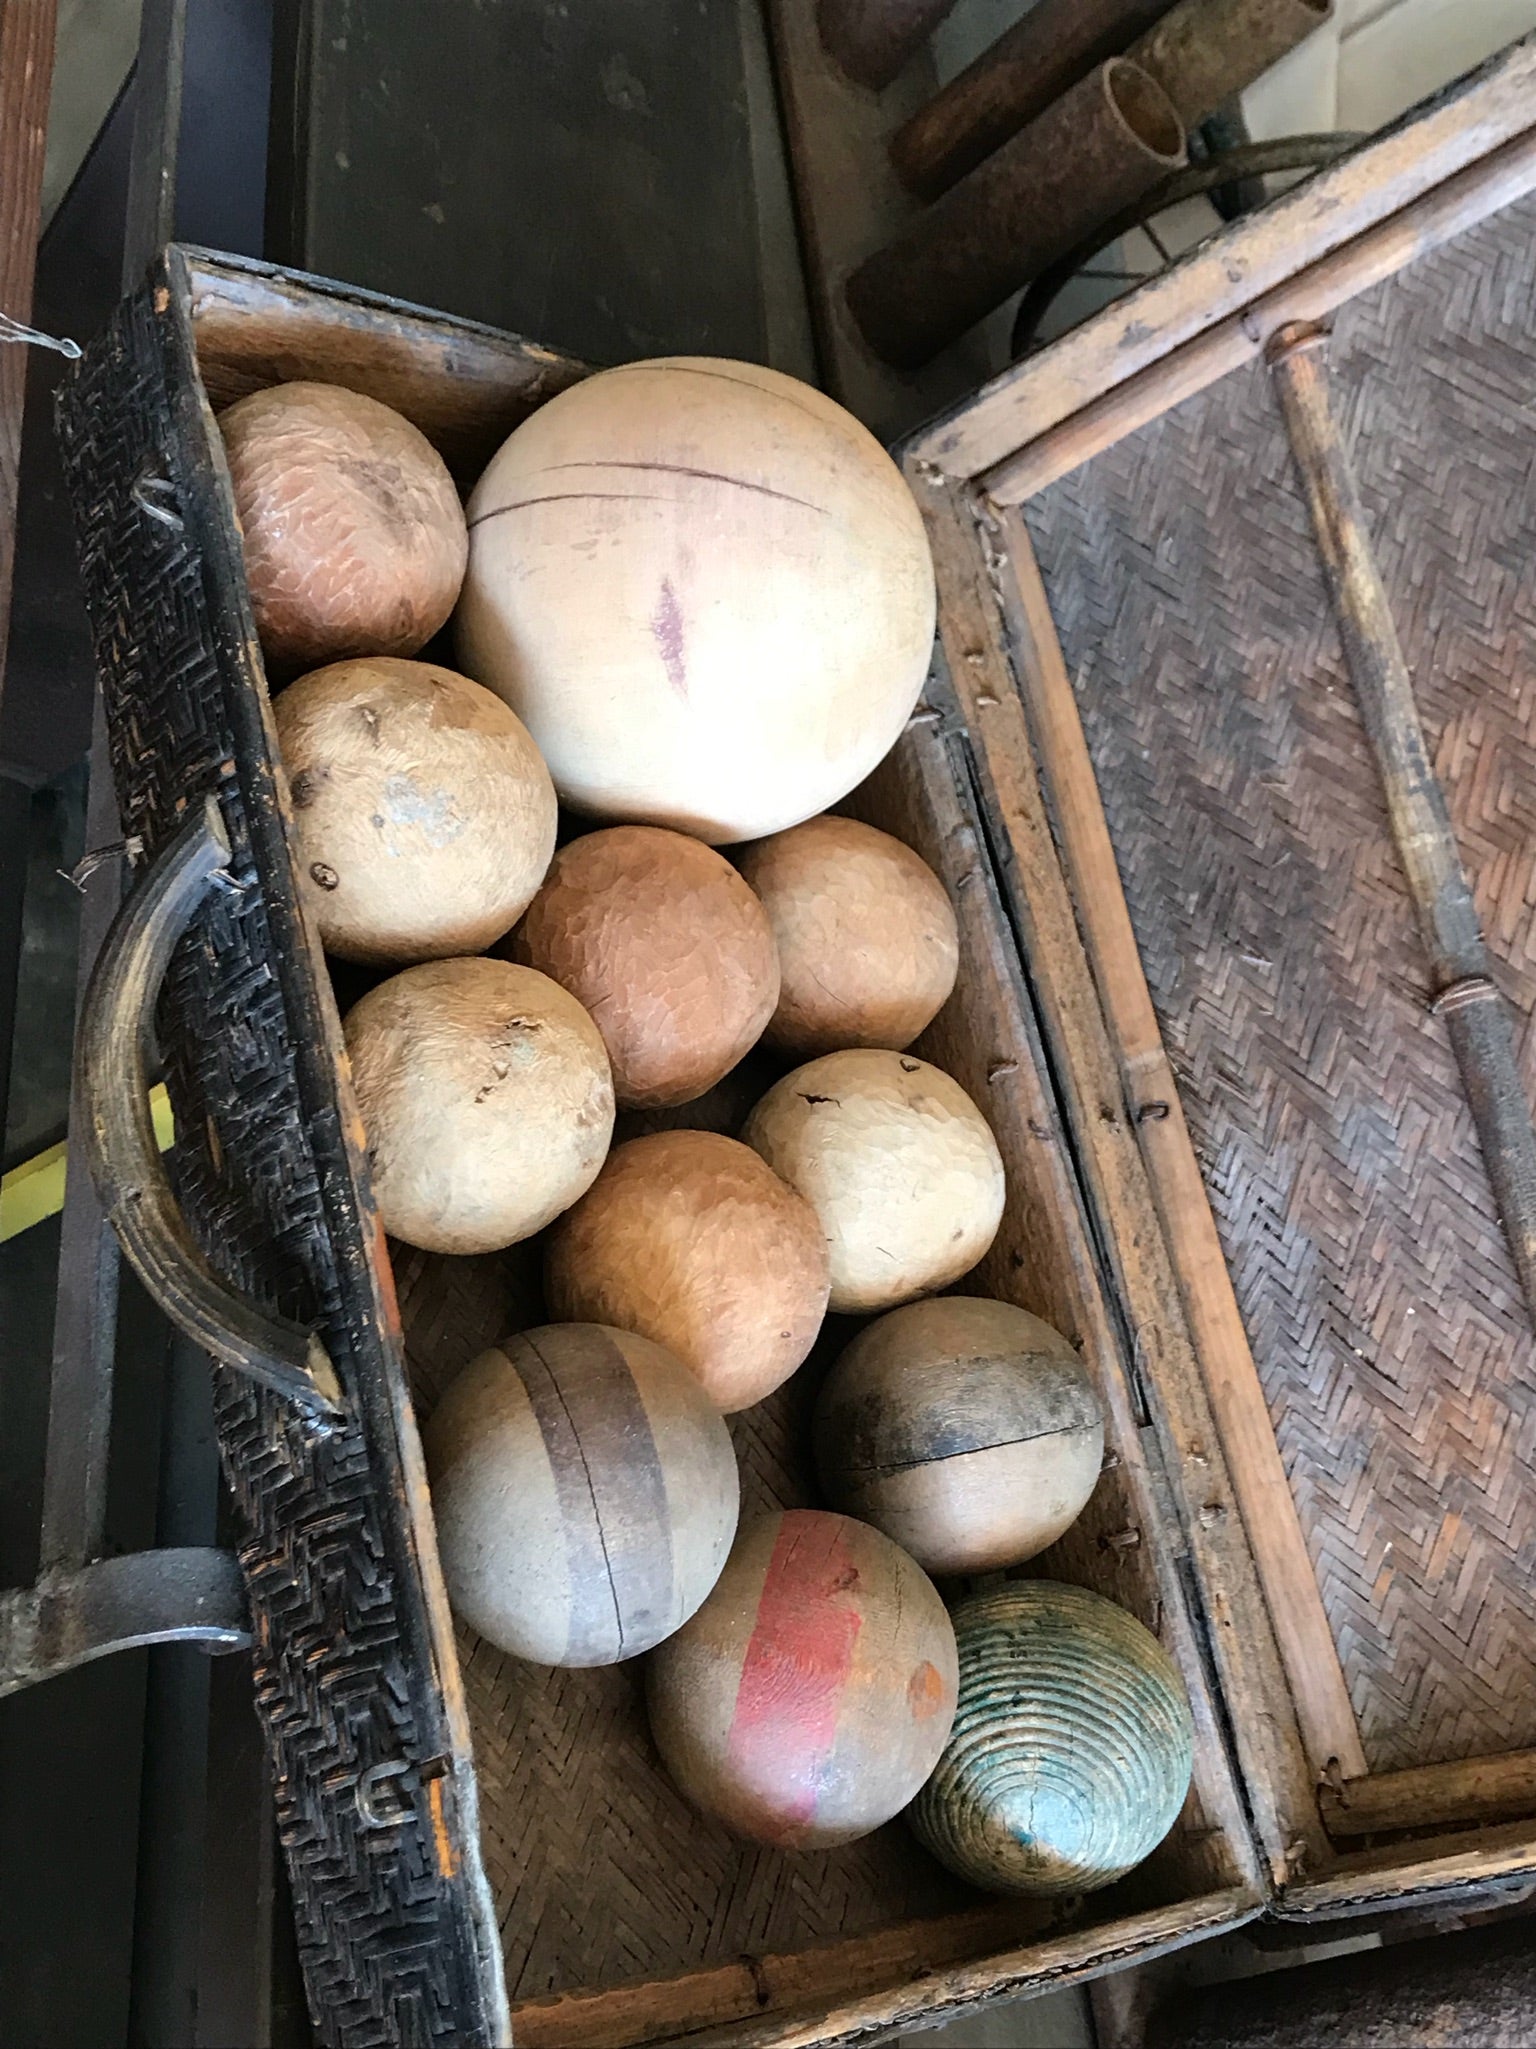 Jeu de boules de pétanque vintage

1 grand, 7 petits, 4 croquets - 12 au total état vintage.